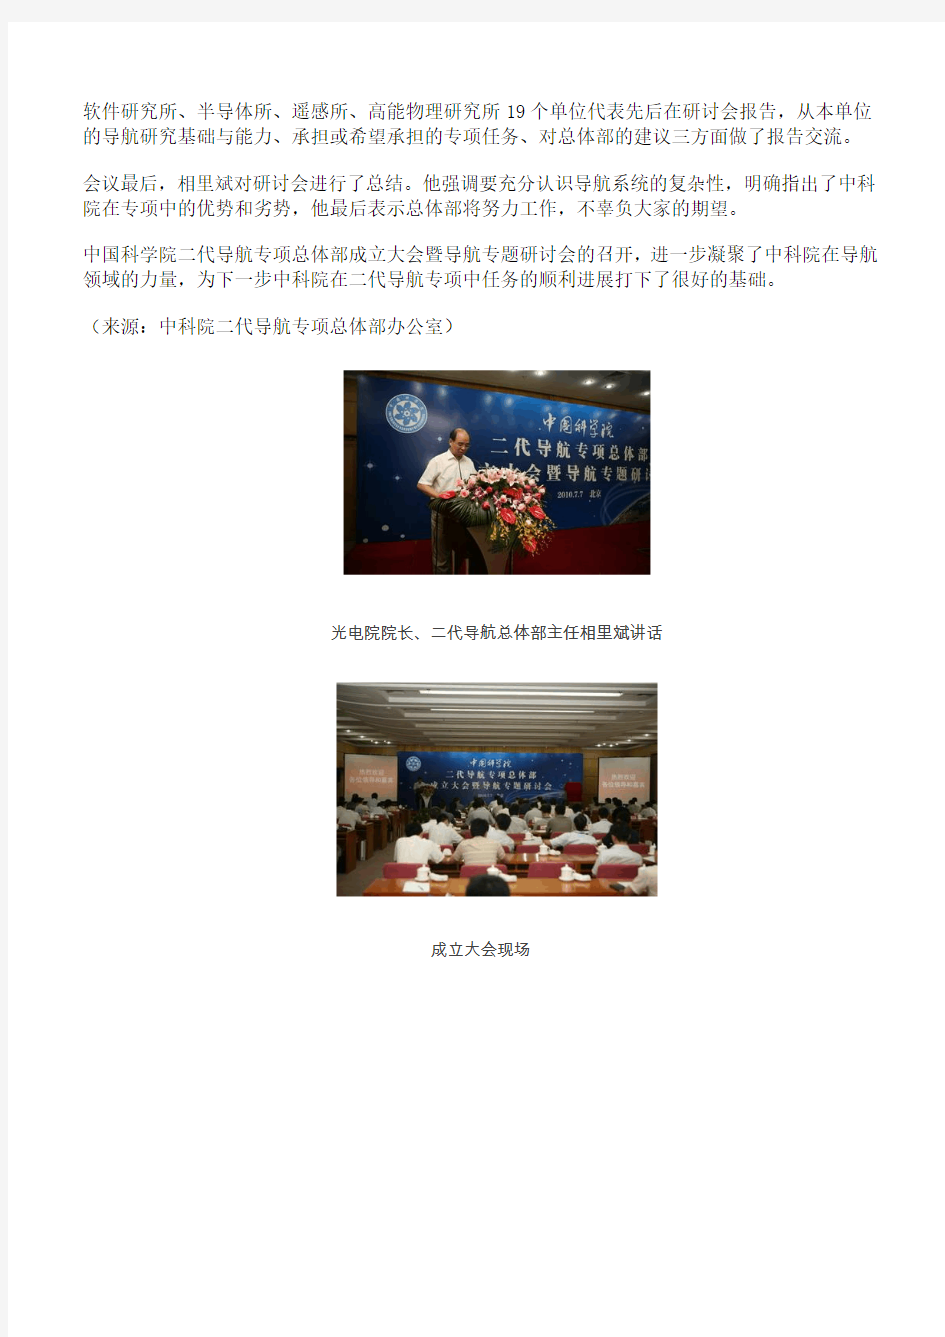 中国科学院二代导航专项总体部(北斗二代)成立大会暨导航专题研讨会召开